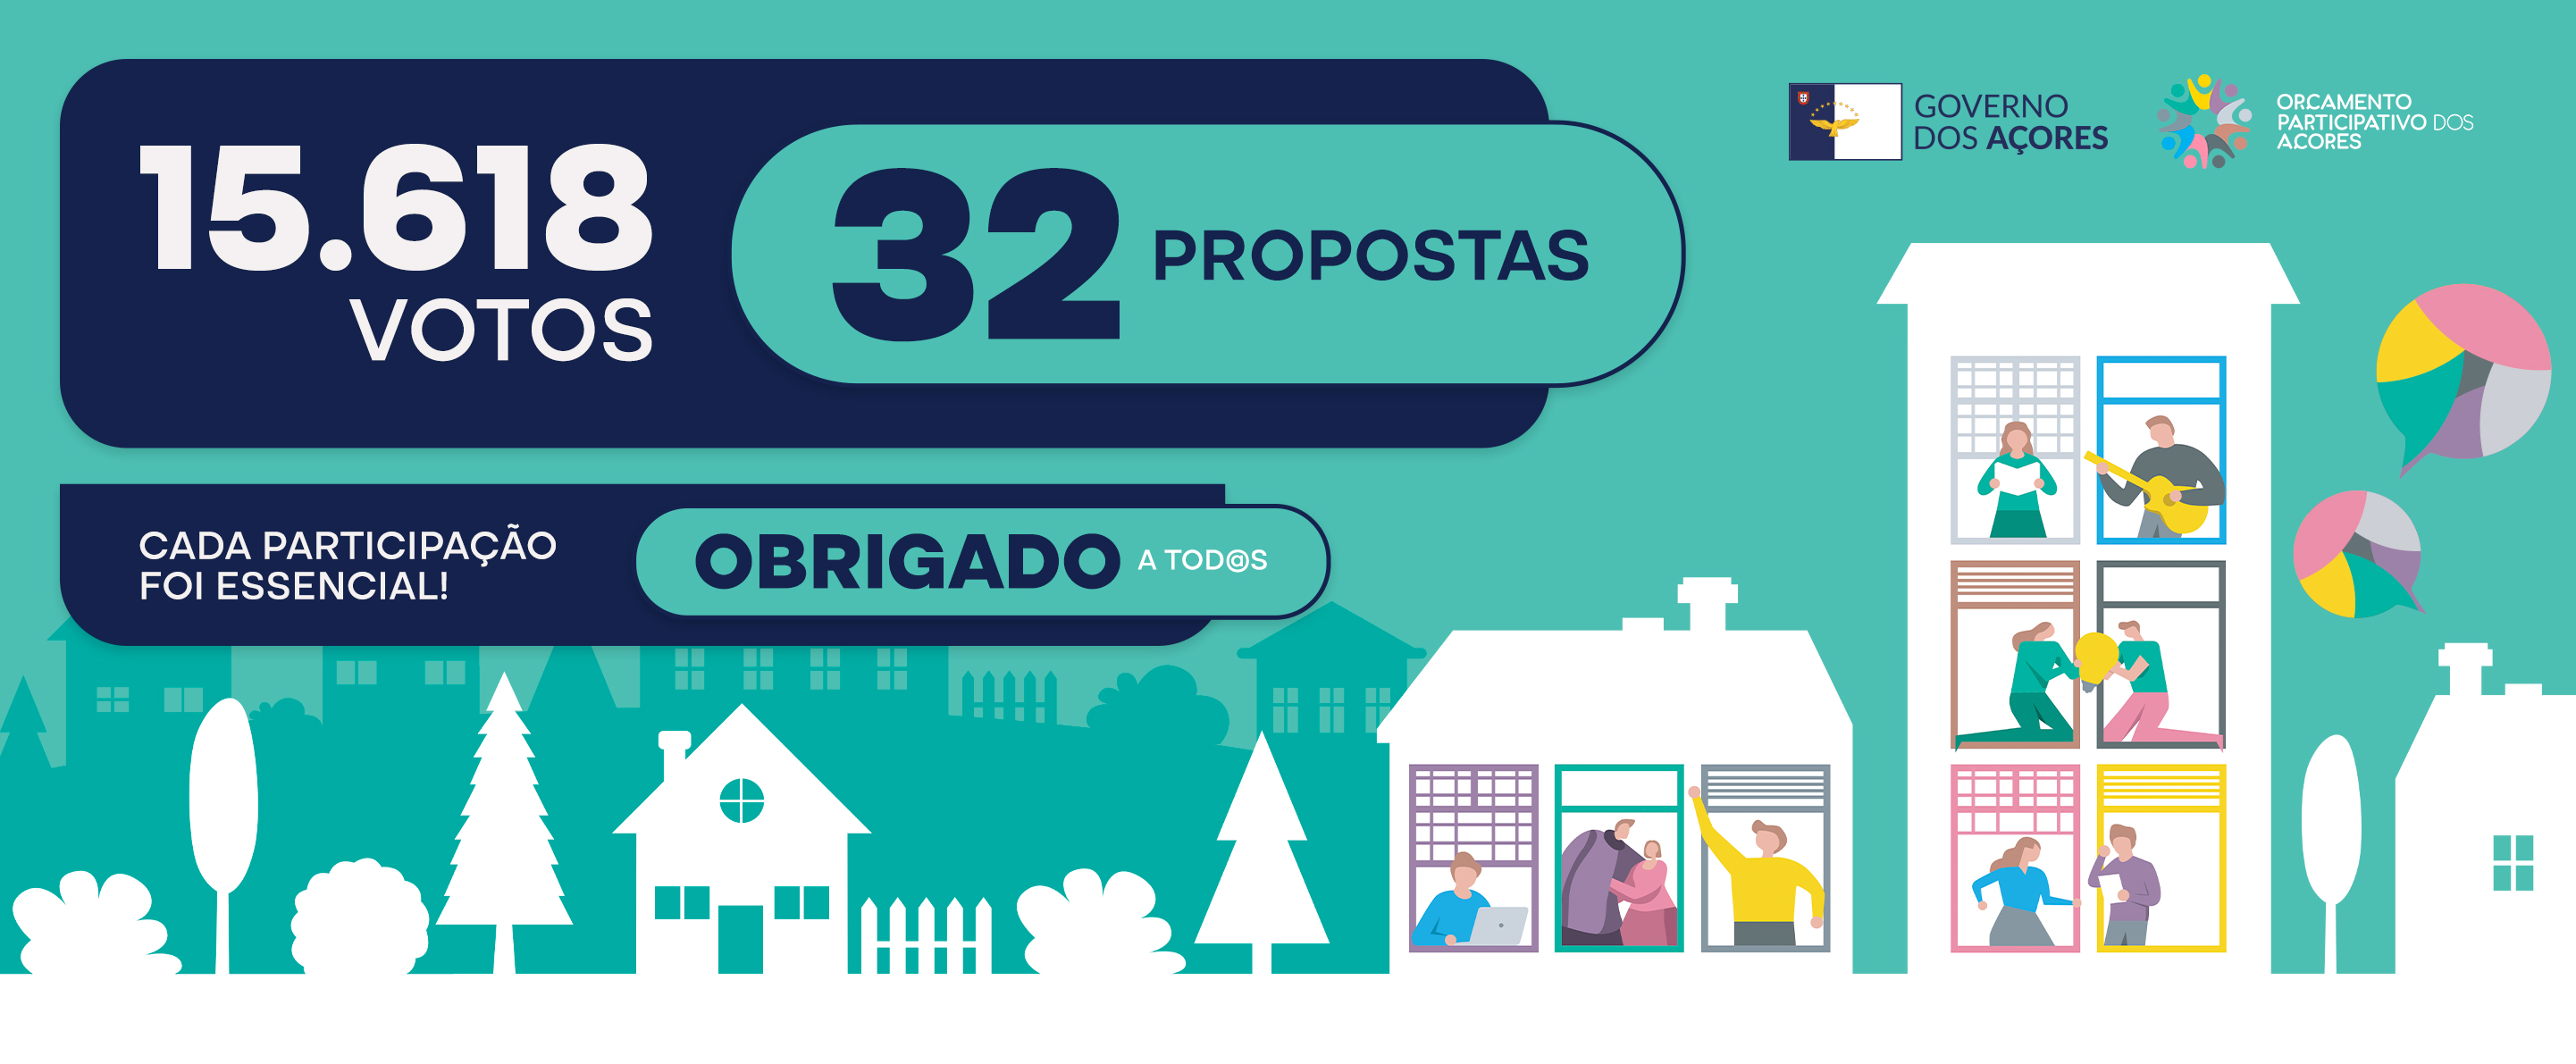 Total de 32 propostas vencedoras do Orçamento Participativo dos Açores